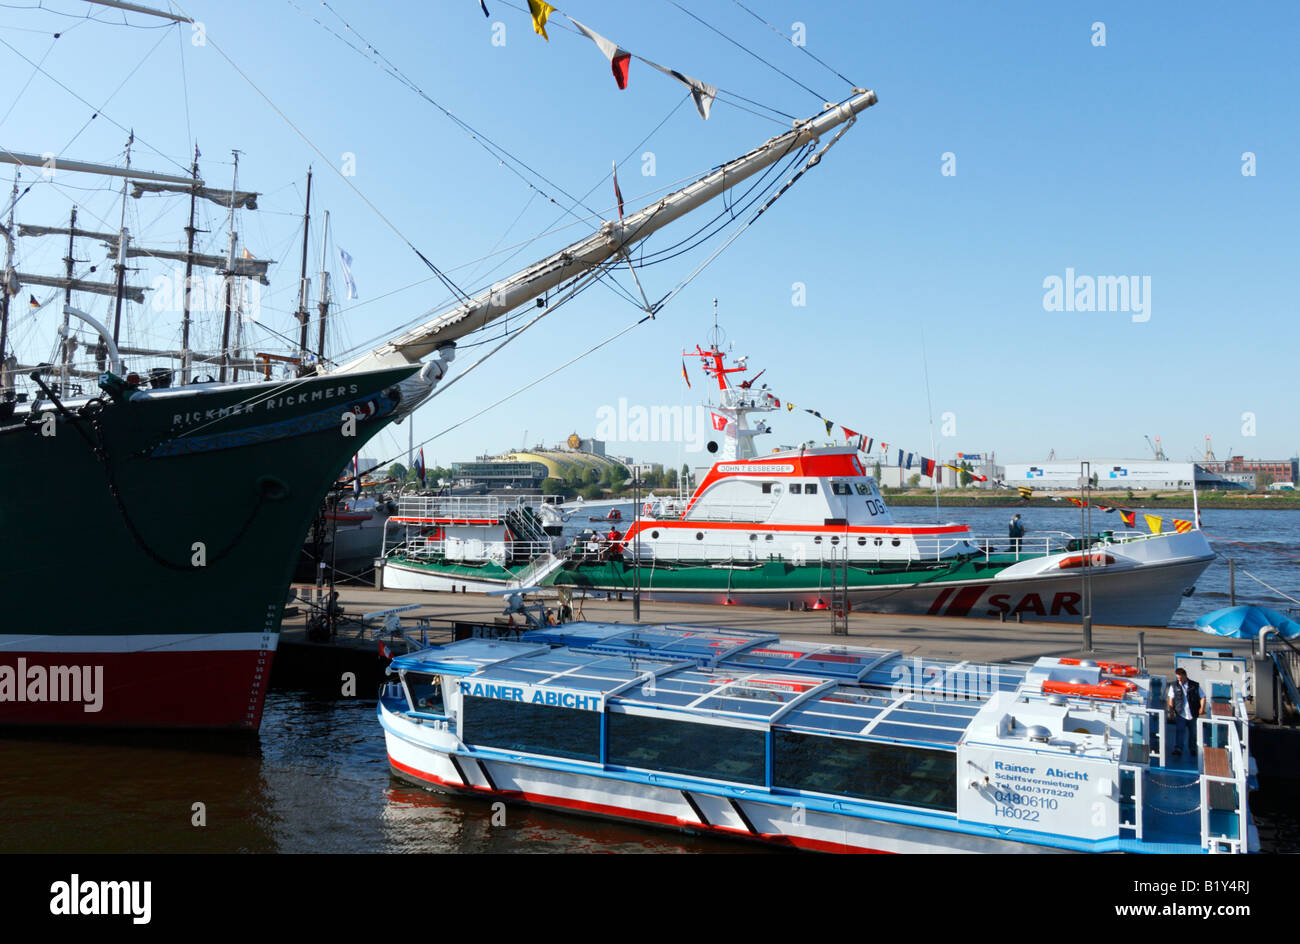 Hamburg-Landungsbrücken-SAR-Rettung Schiff und Segeln Museumsschiff "Rickmer Rickmers" Stockfoto